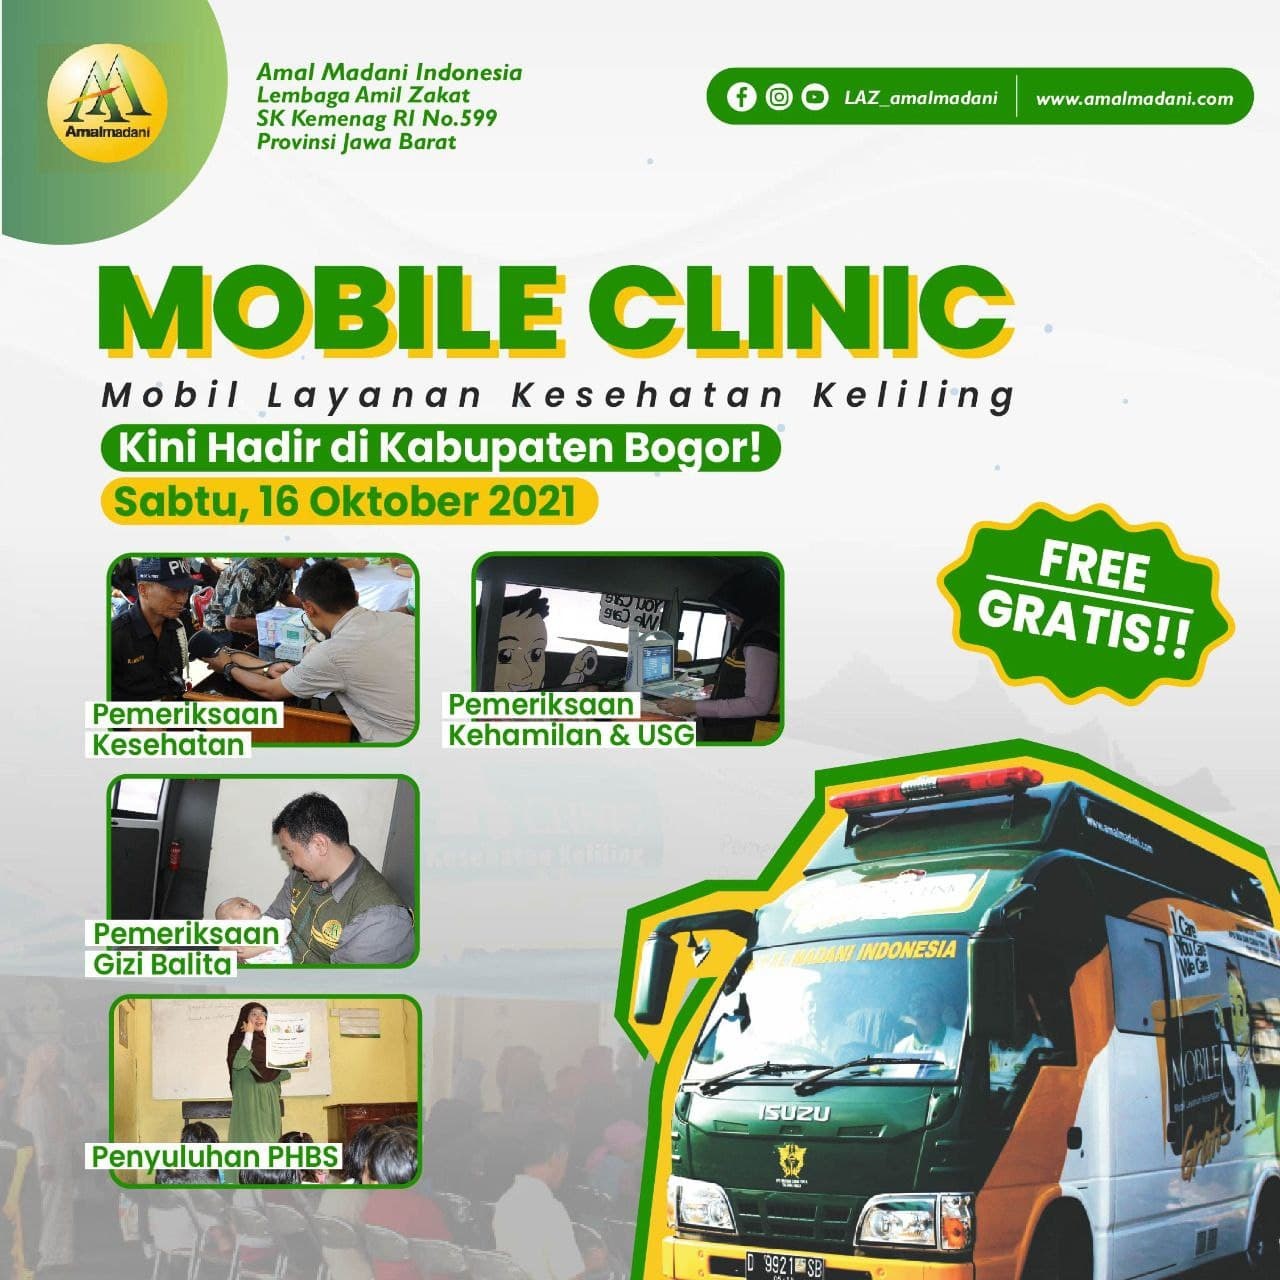 Mobil Clinic Kembali Hadir dan Akan Beroperasi di Salah Satu Desa Kab. Bogor!